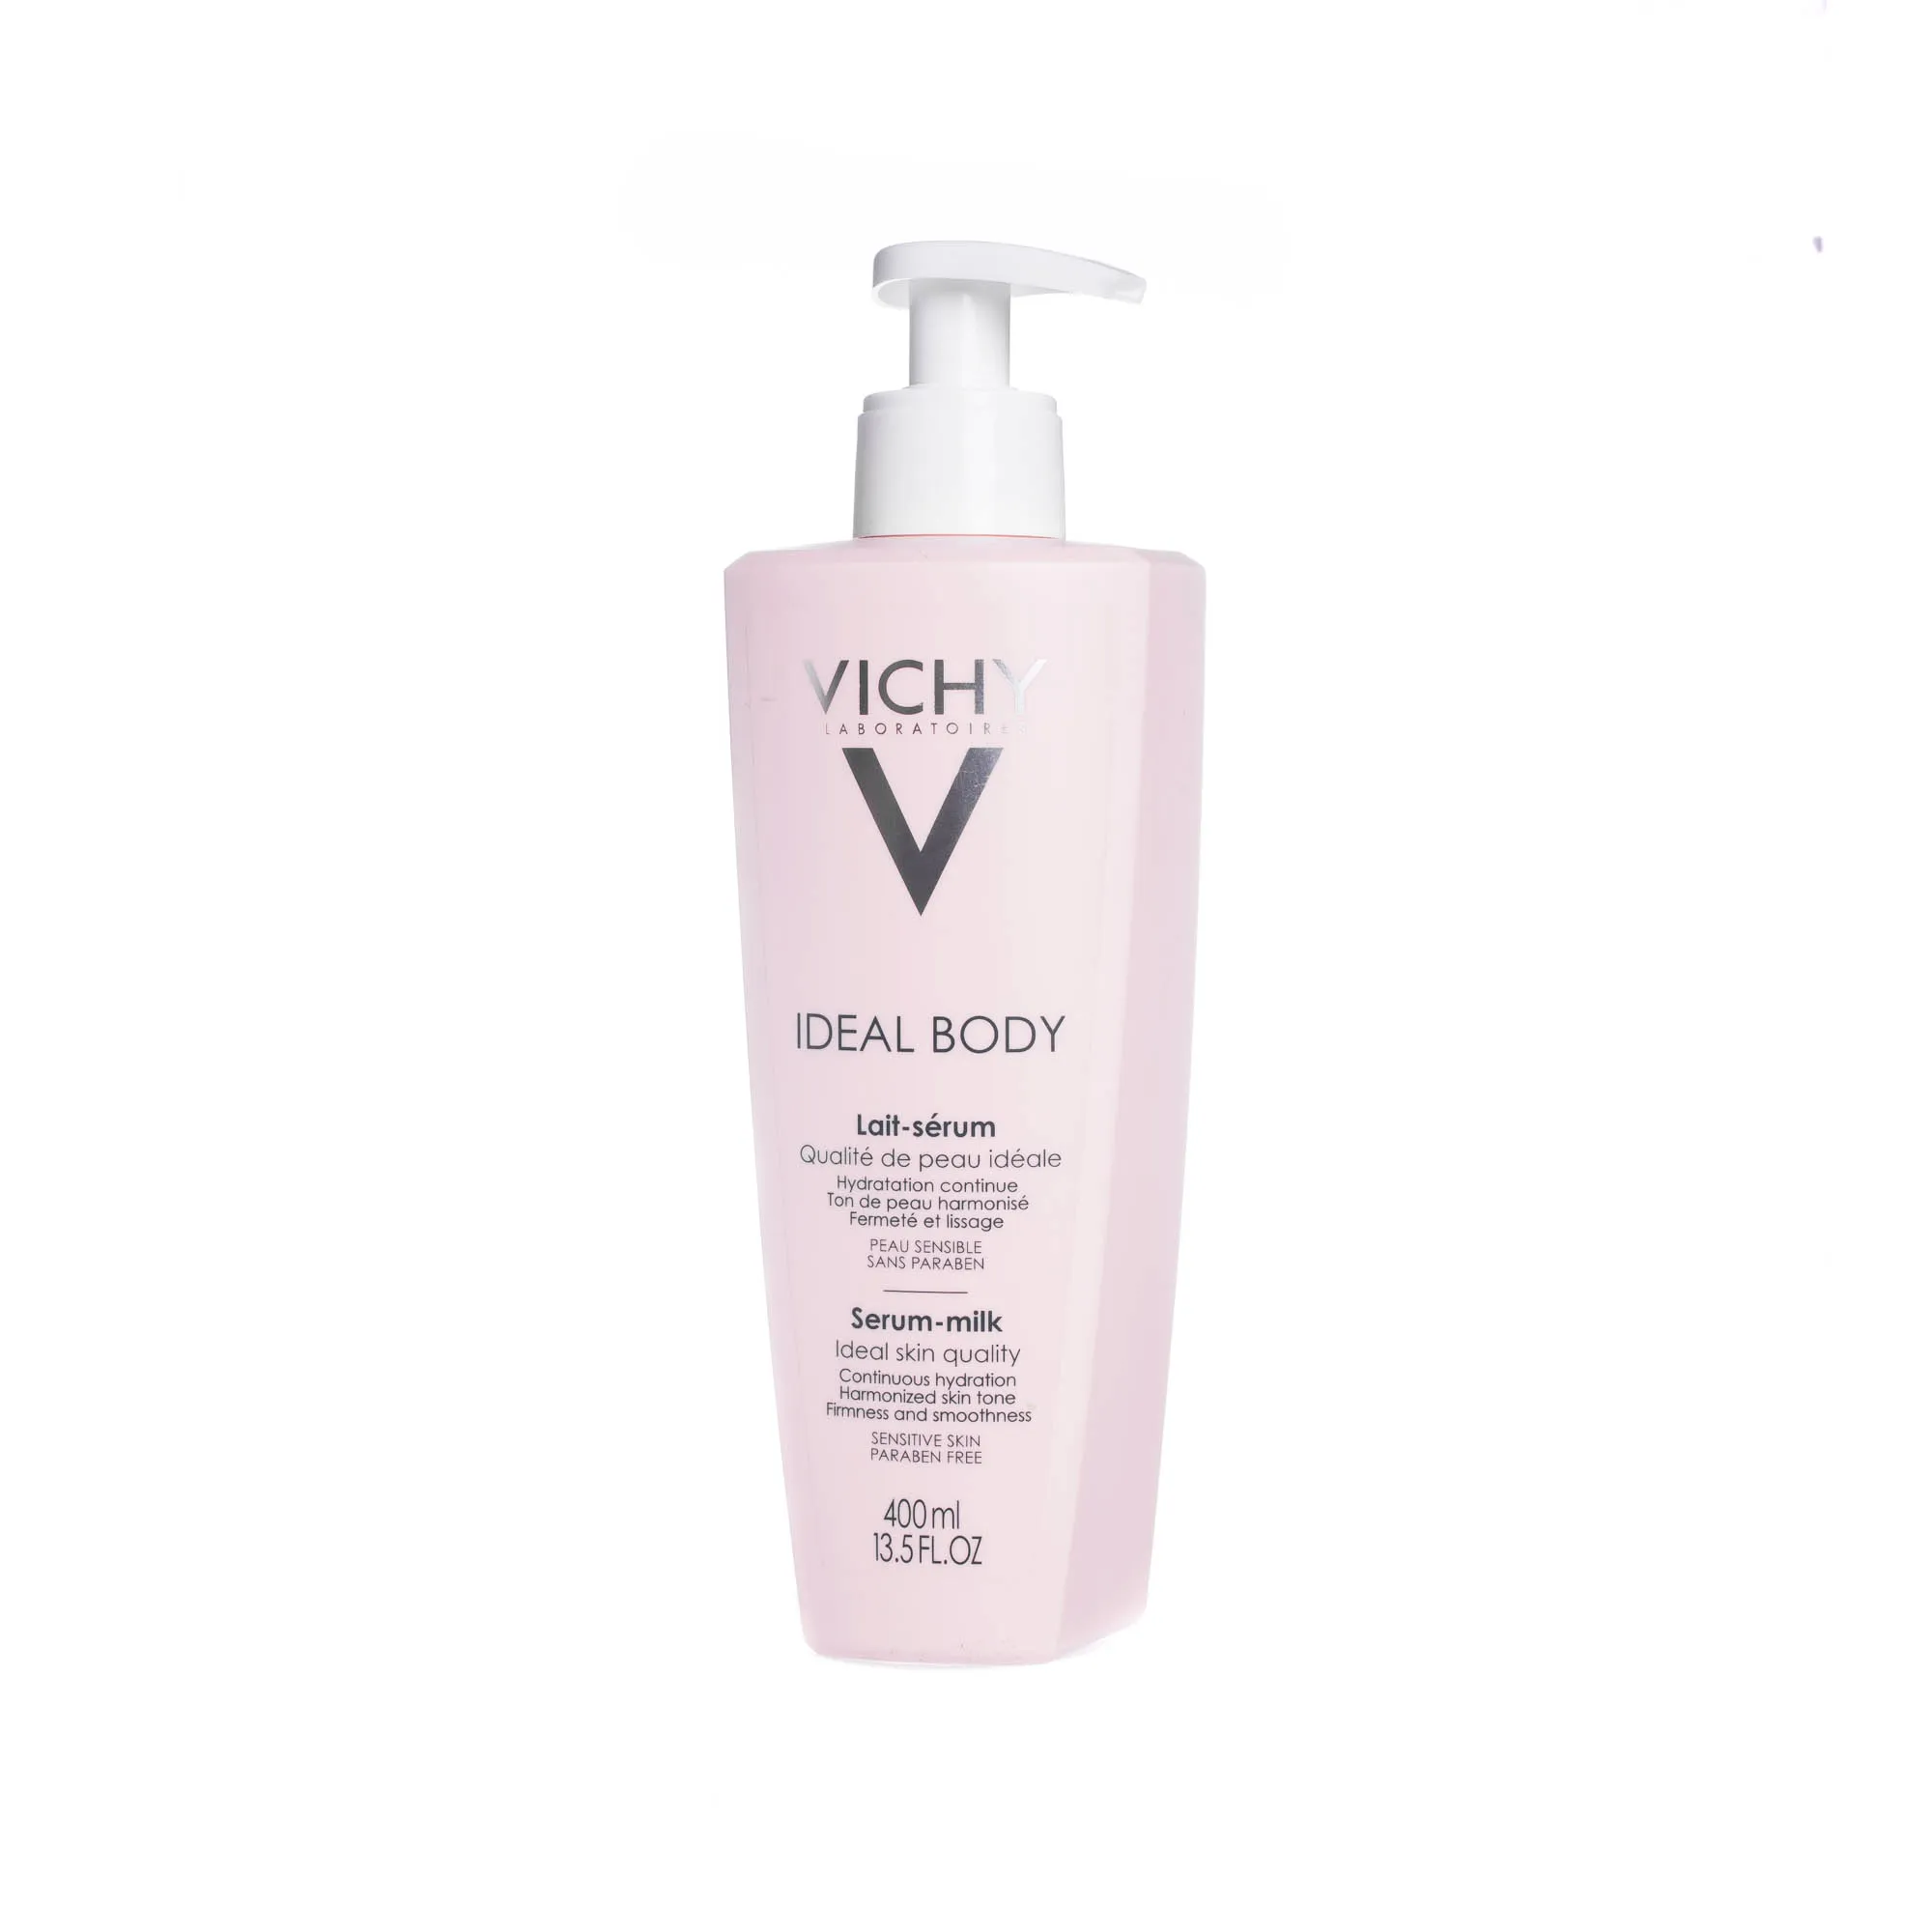 Vichy Ideal Body - mleczko-serum długotrwale nawilżający i wyrównujący koloryt skóry, 400 ml 